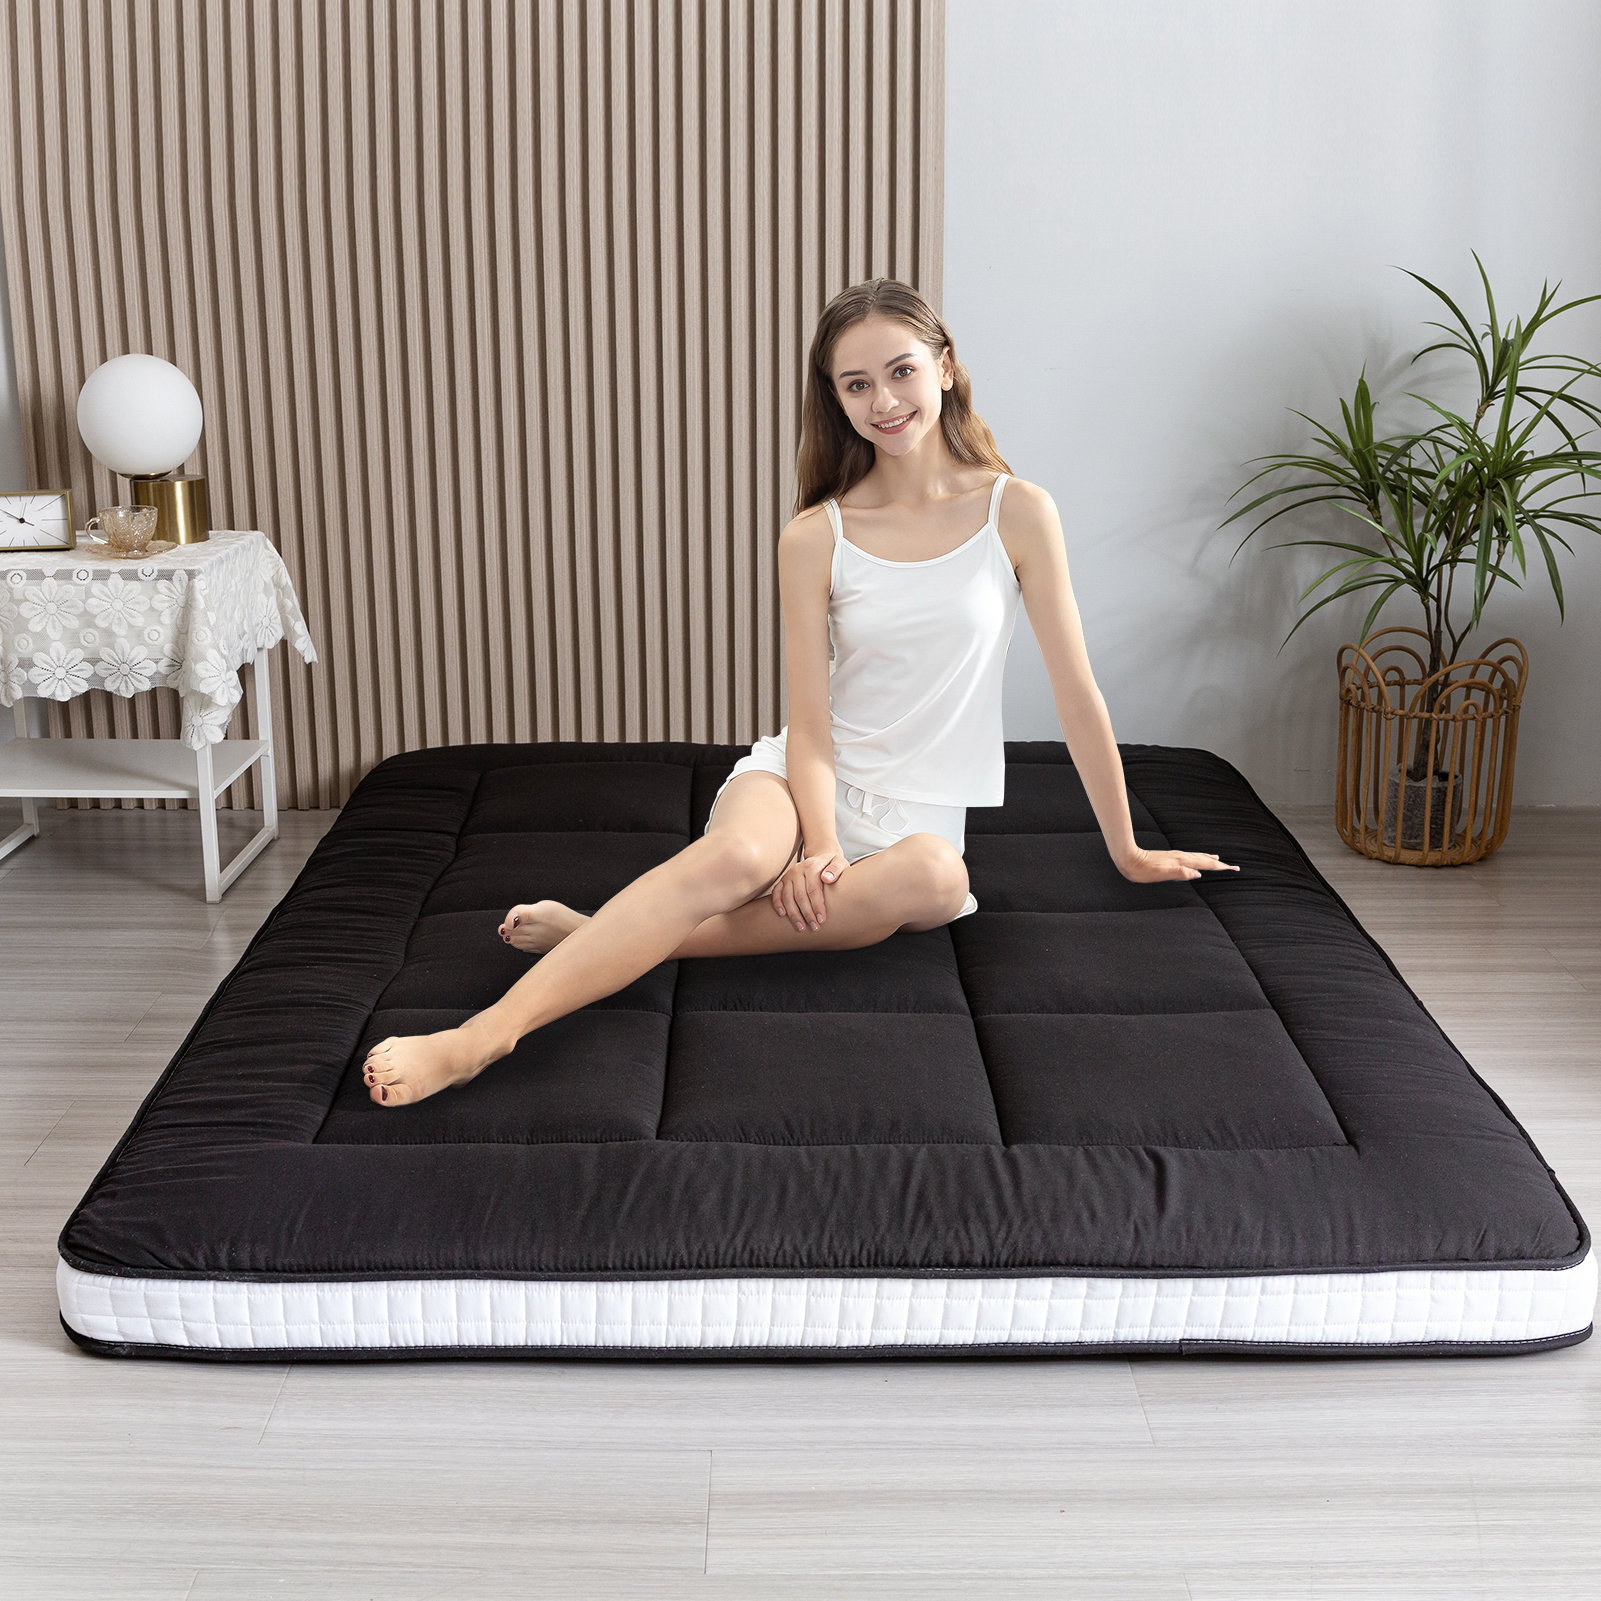 https://assets.wfcdn.com/im/46507912/compr-r85/2075/207525997/agyen-42-memory-foam-japanese-futon-mattress-futon-mattress.jpg